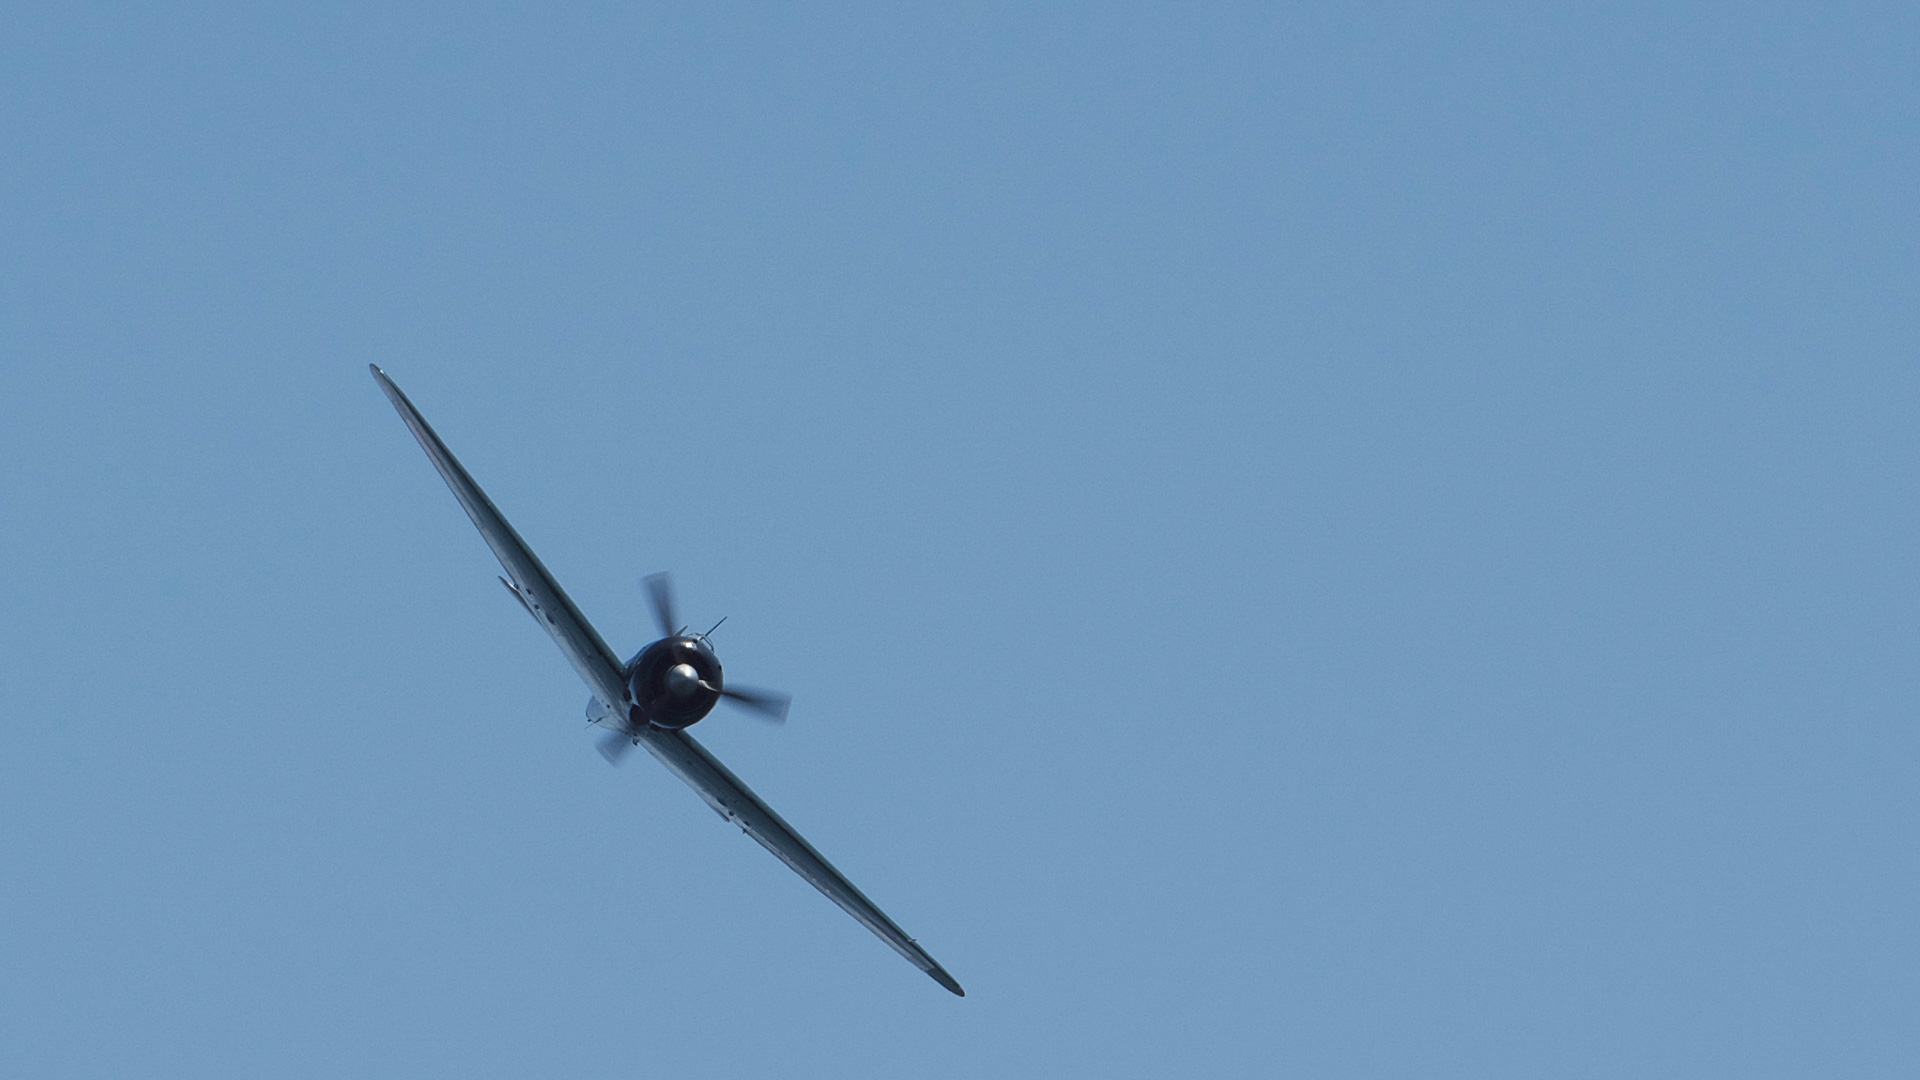 画像 佐藤安孝の零戦フォトギャラリー 東京湾上空に飛来した零式艦上戦闘機の写真をフルhd解像度で 19 21 Car Watch